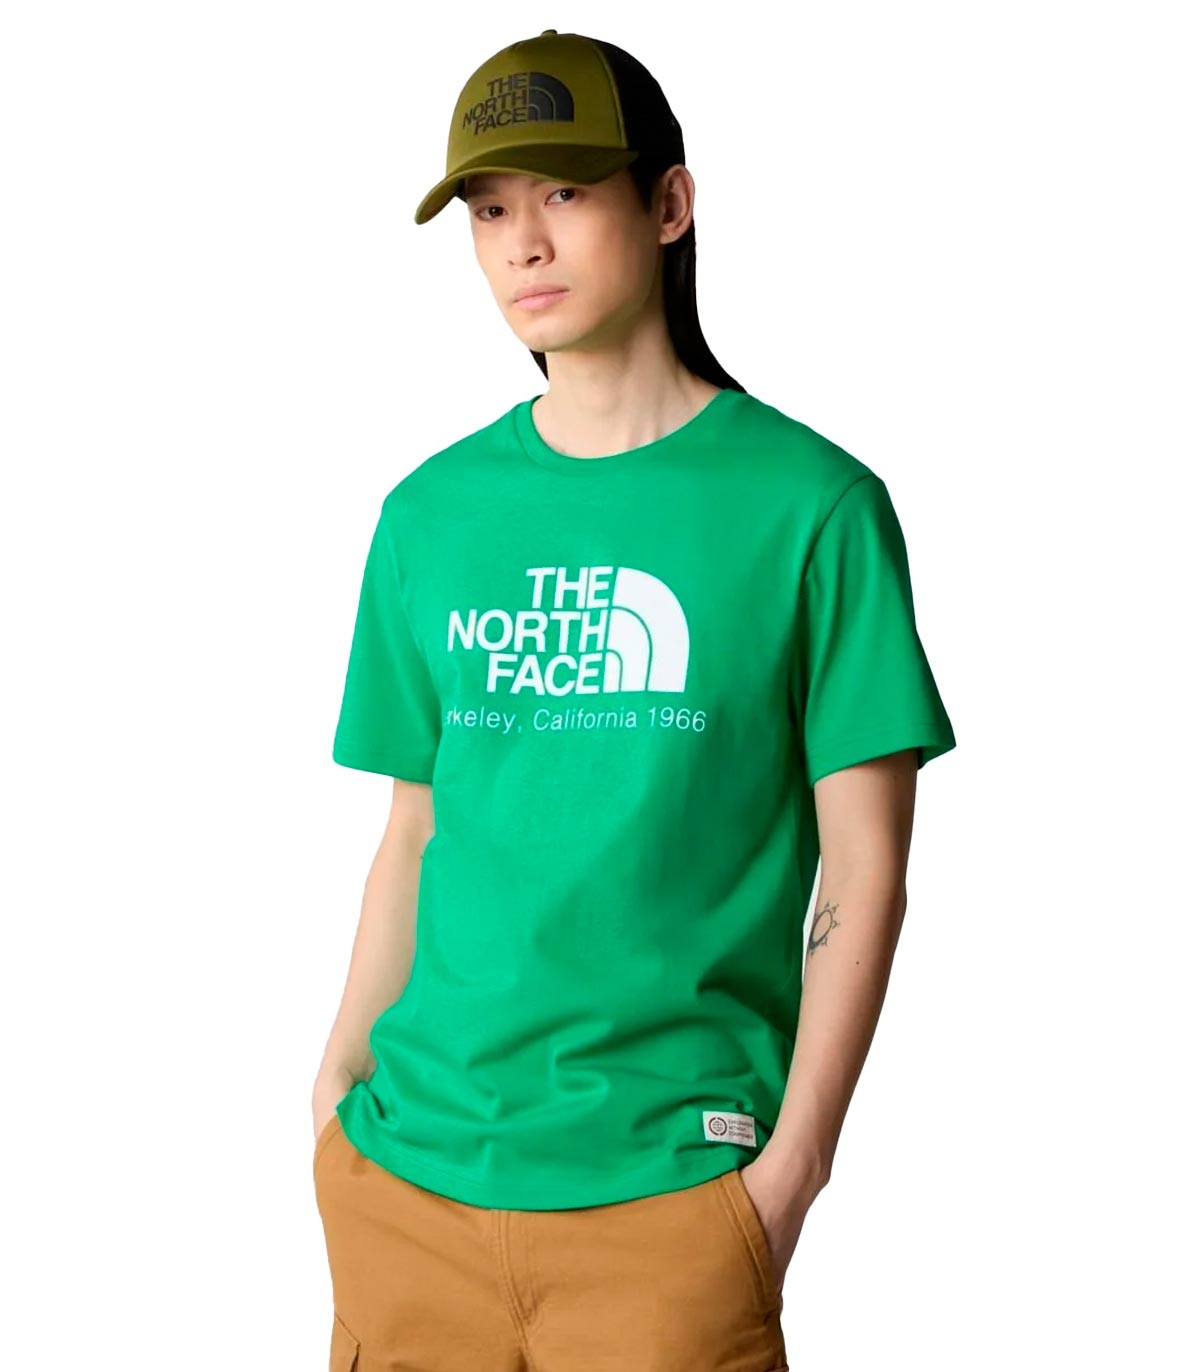 The North Face - Camiseta Berkeley California - Verde